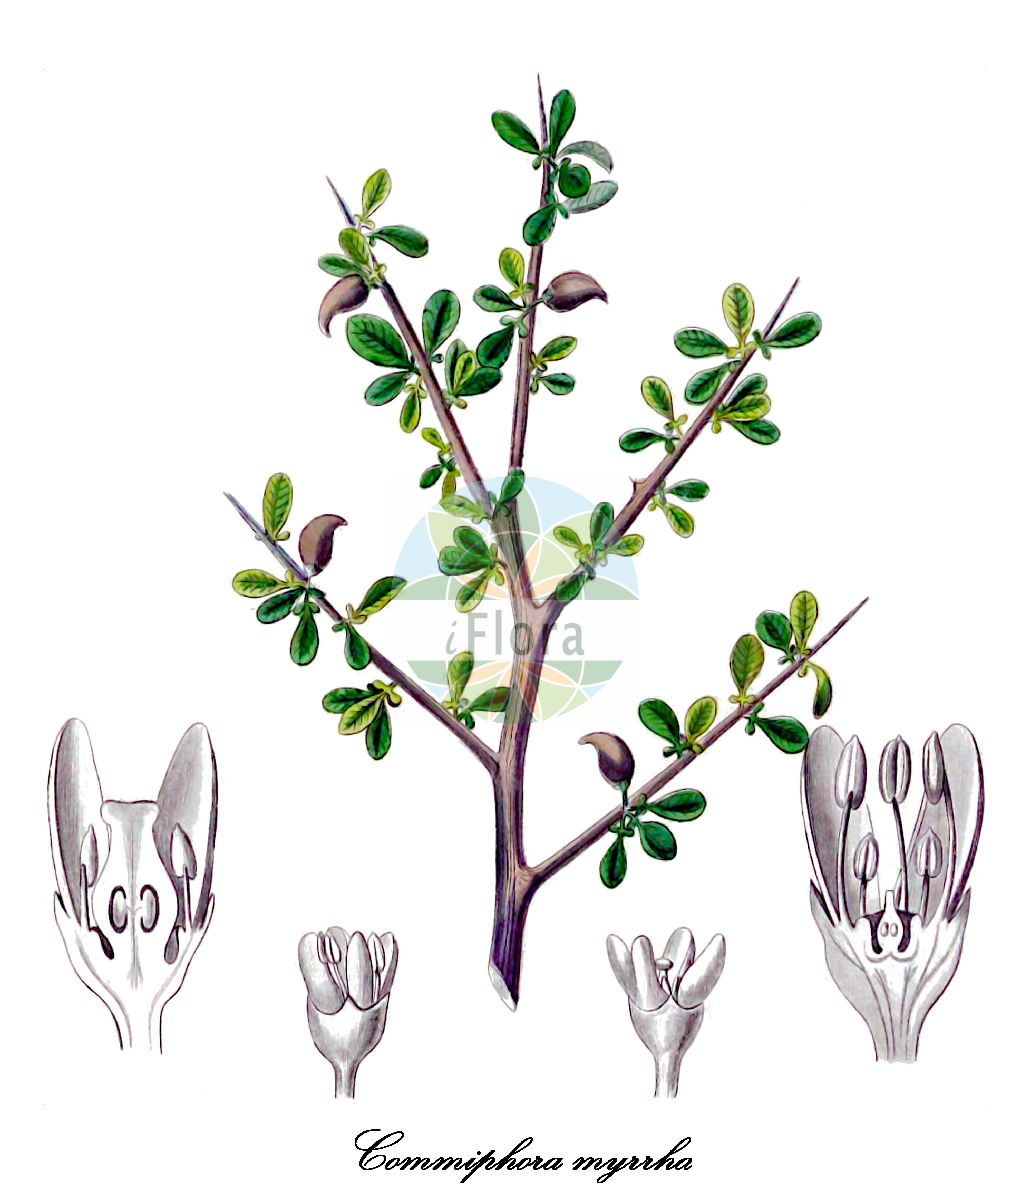 Historische Abbildung von Commiphora myrrha (Myrrhe). Das Bild zeigt Blatt, Bluete, Frucht und Same. ---- Historical Drawing of Commiphora myrrha (Myrrhe). The image is showing leaf, flower, fruit and seed.(Commiphora myrrha,Myrrhe,Echte Myrrhe,Myrrhenbaum,Commiphora,Burseraceae,Blatt,Bluete,Frucht,Same,leaf,flower,fruit,seed,Kohl (1891-1895))